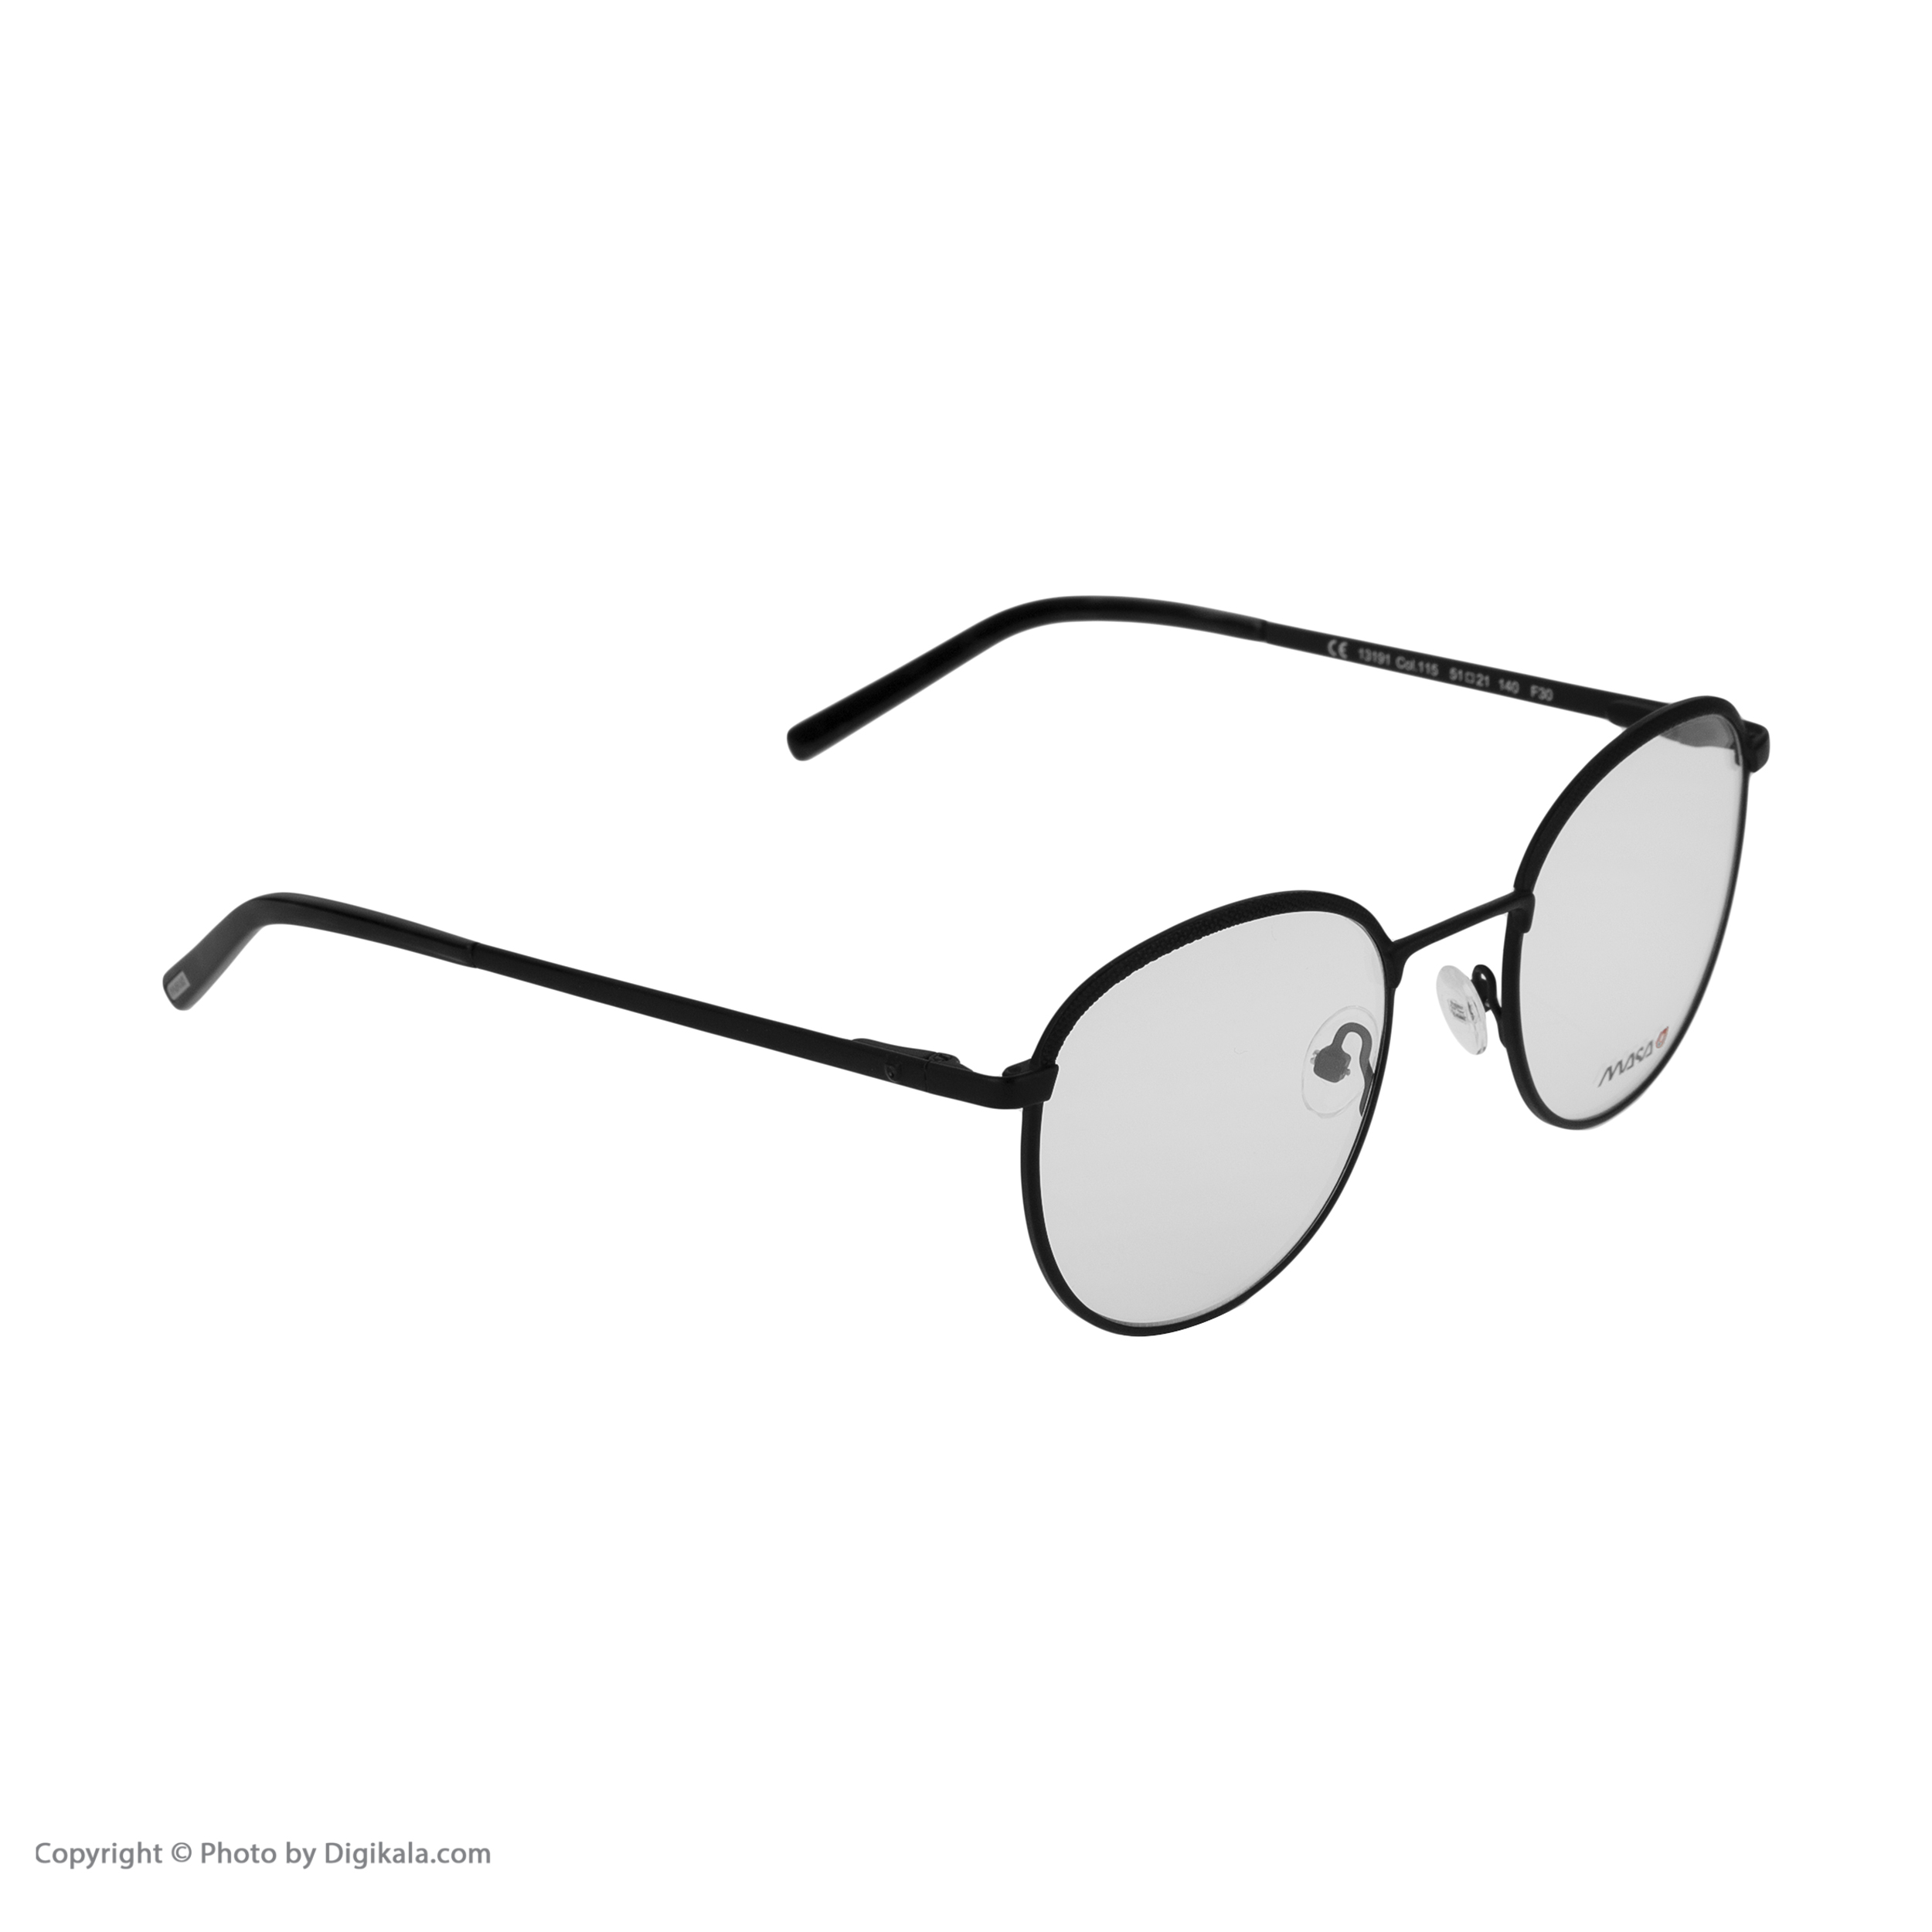 فریم عینک طبی ماسائو مدل 13191-115 -  - 5